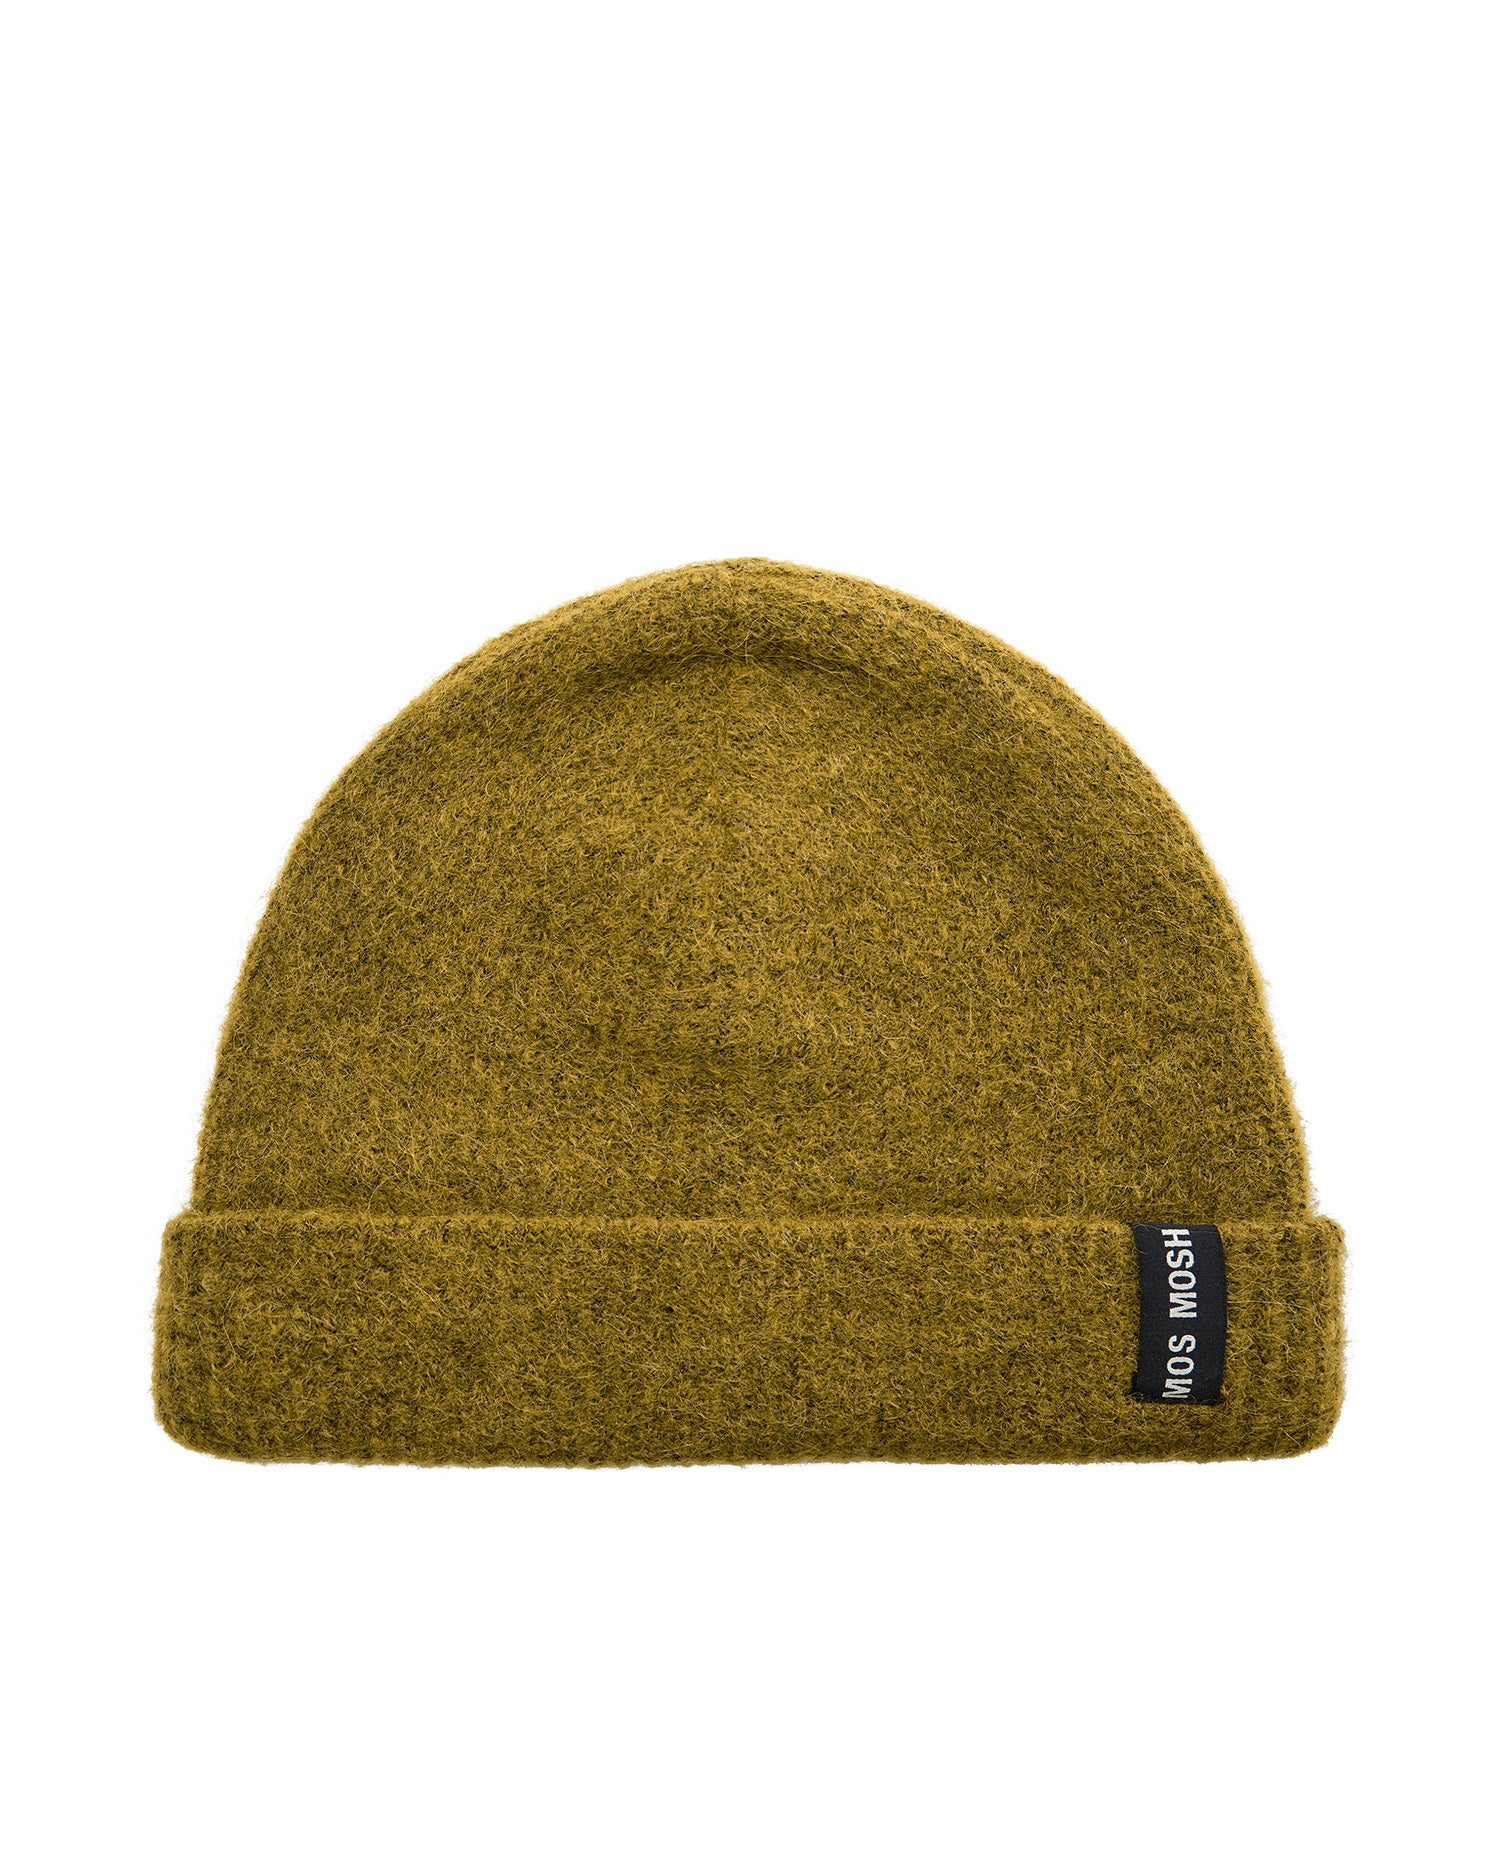 MMThora Knit Hat - Fir Green